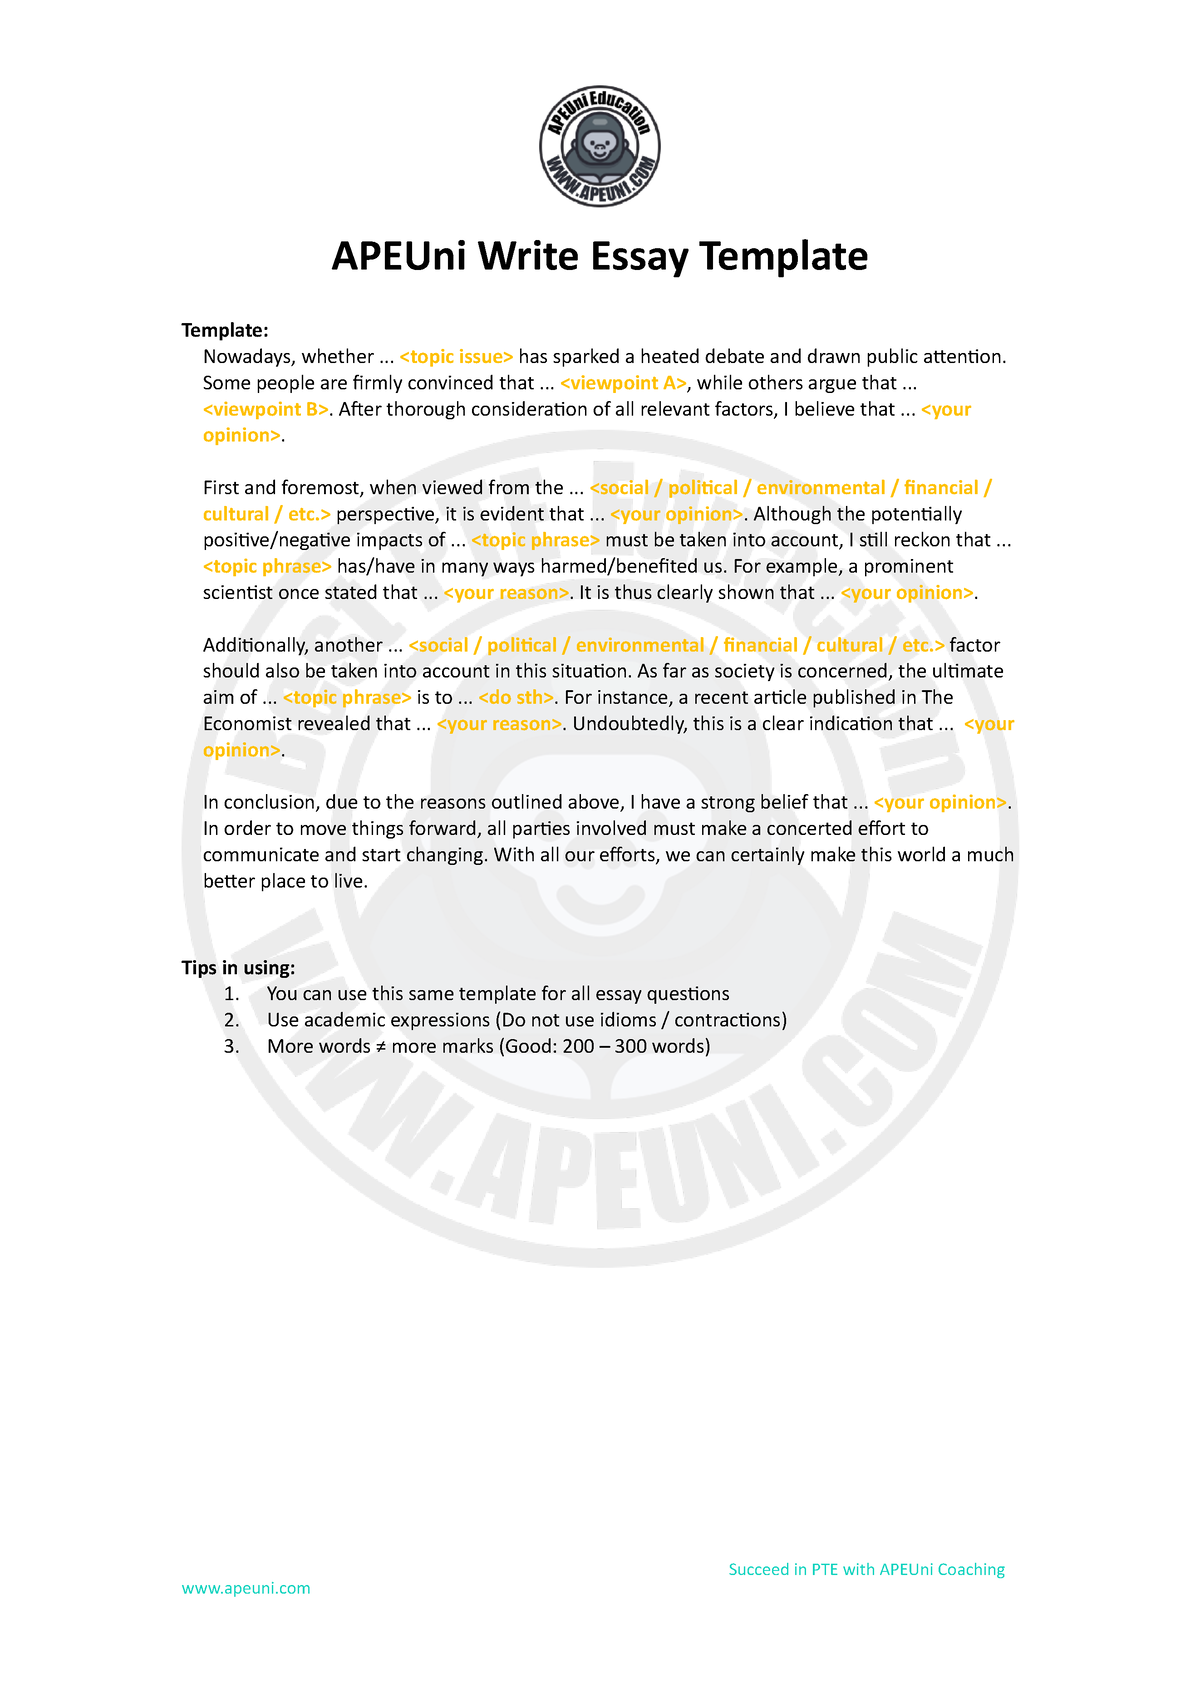 apeuni essay template pdf